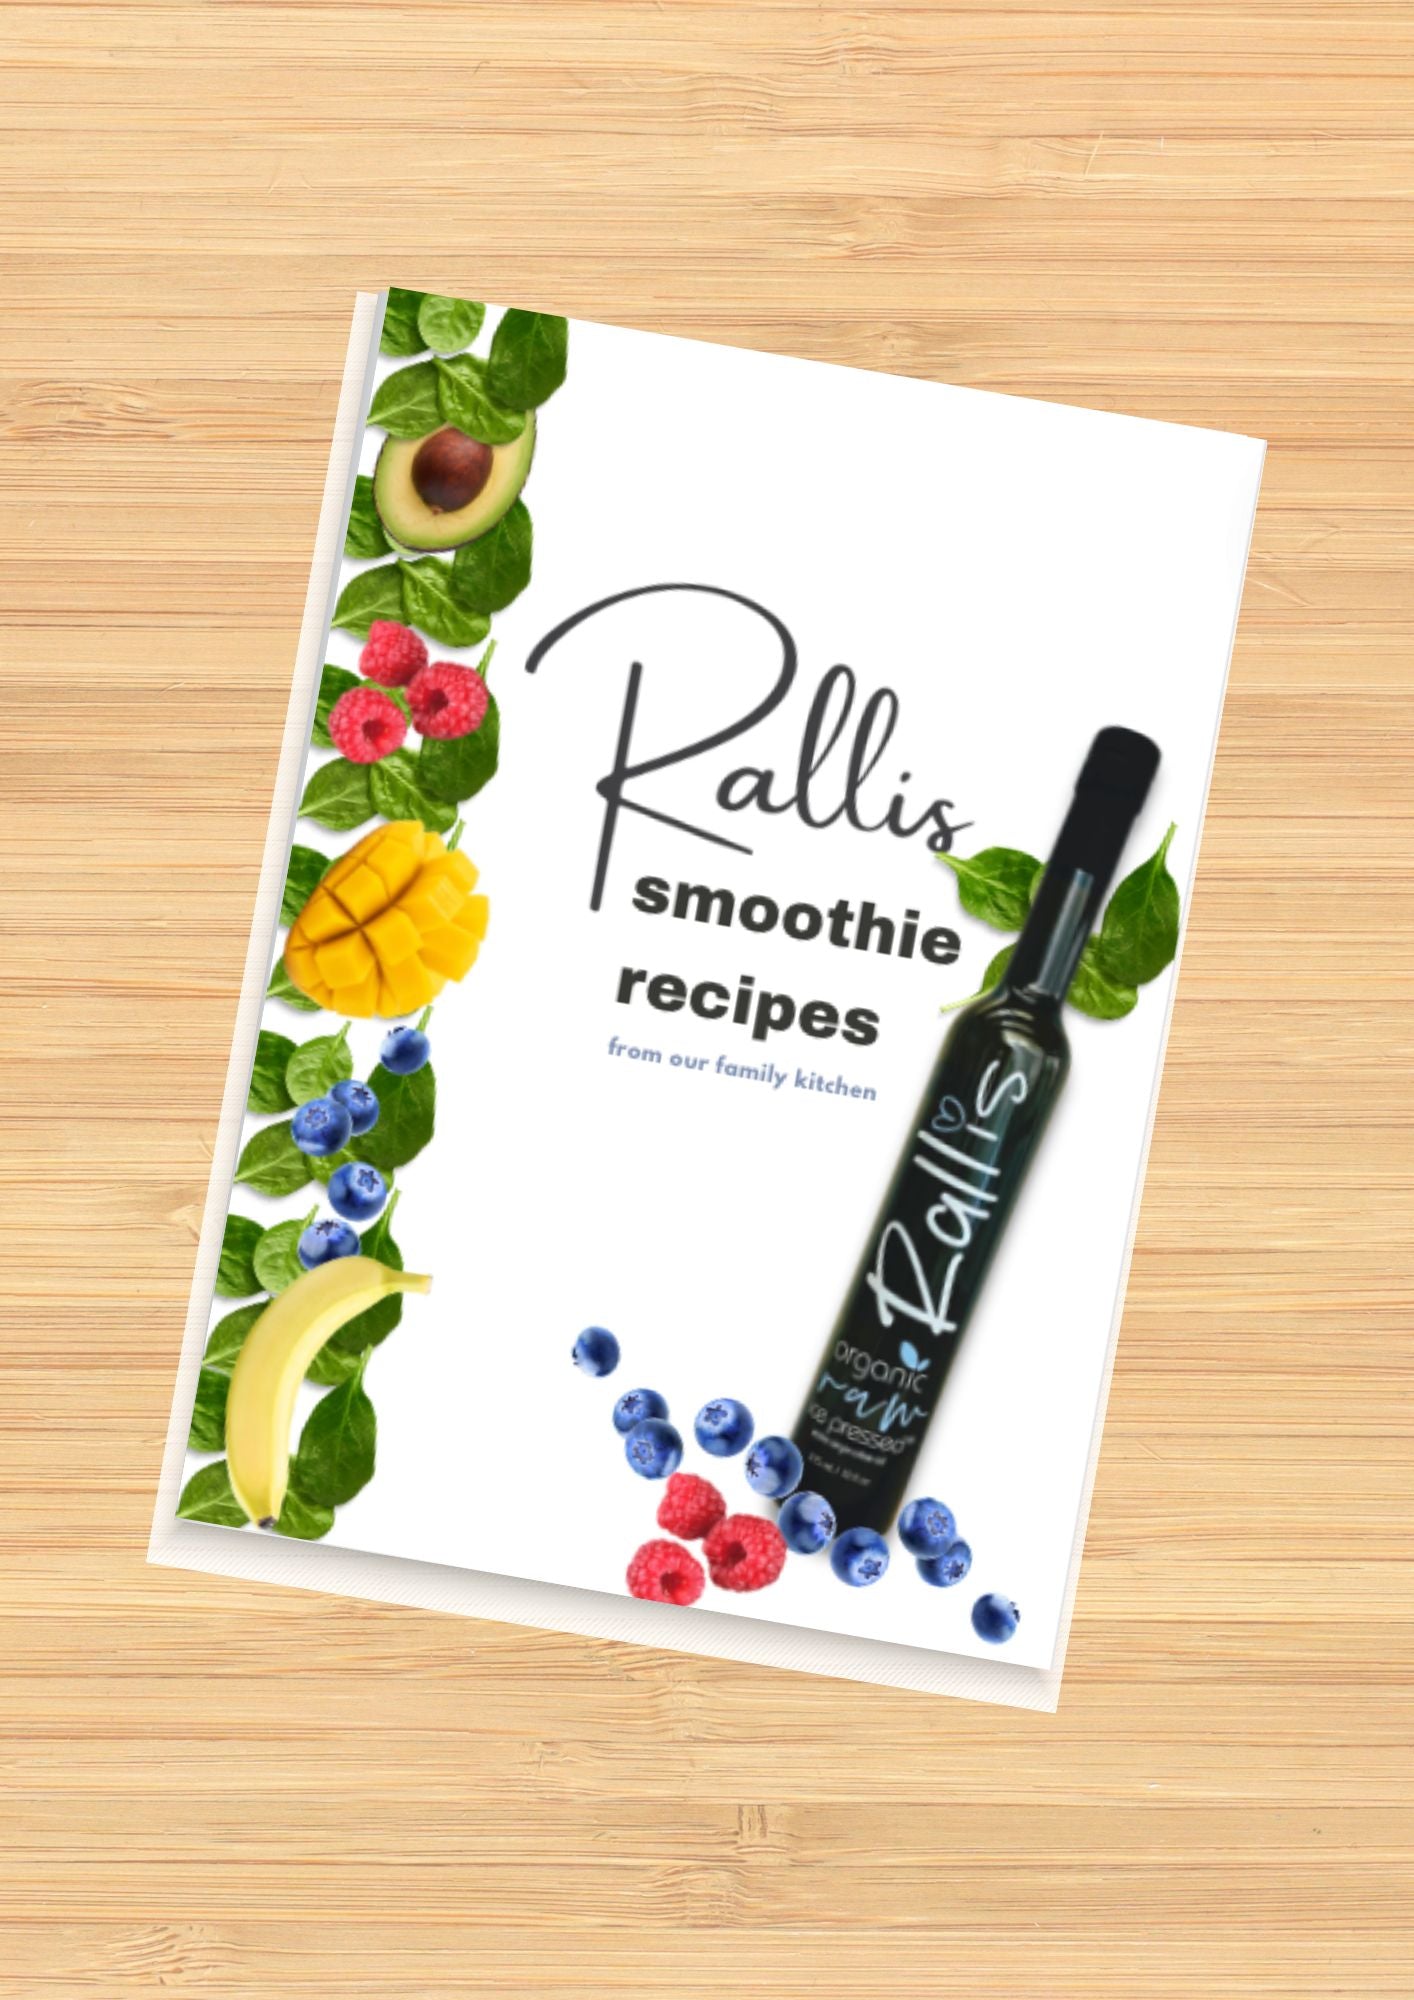 Rallis Family Recipes - Smoothies - Rallis Olive Oil USA